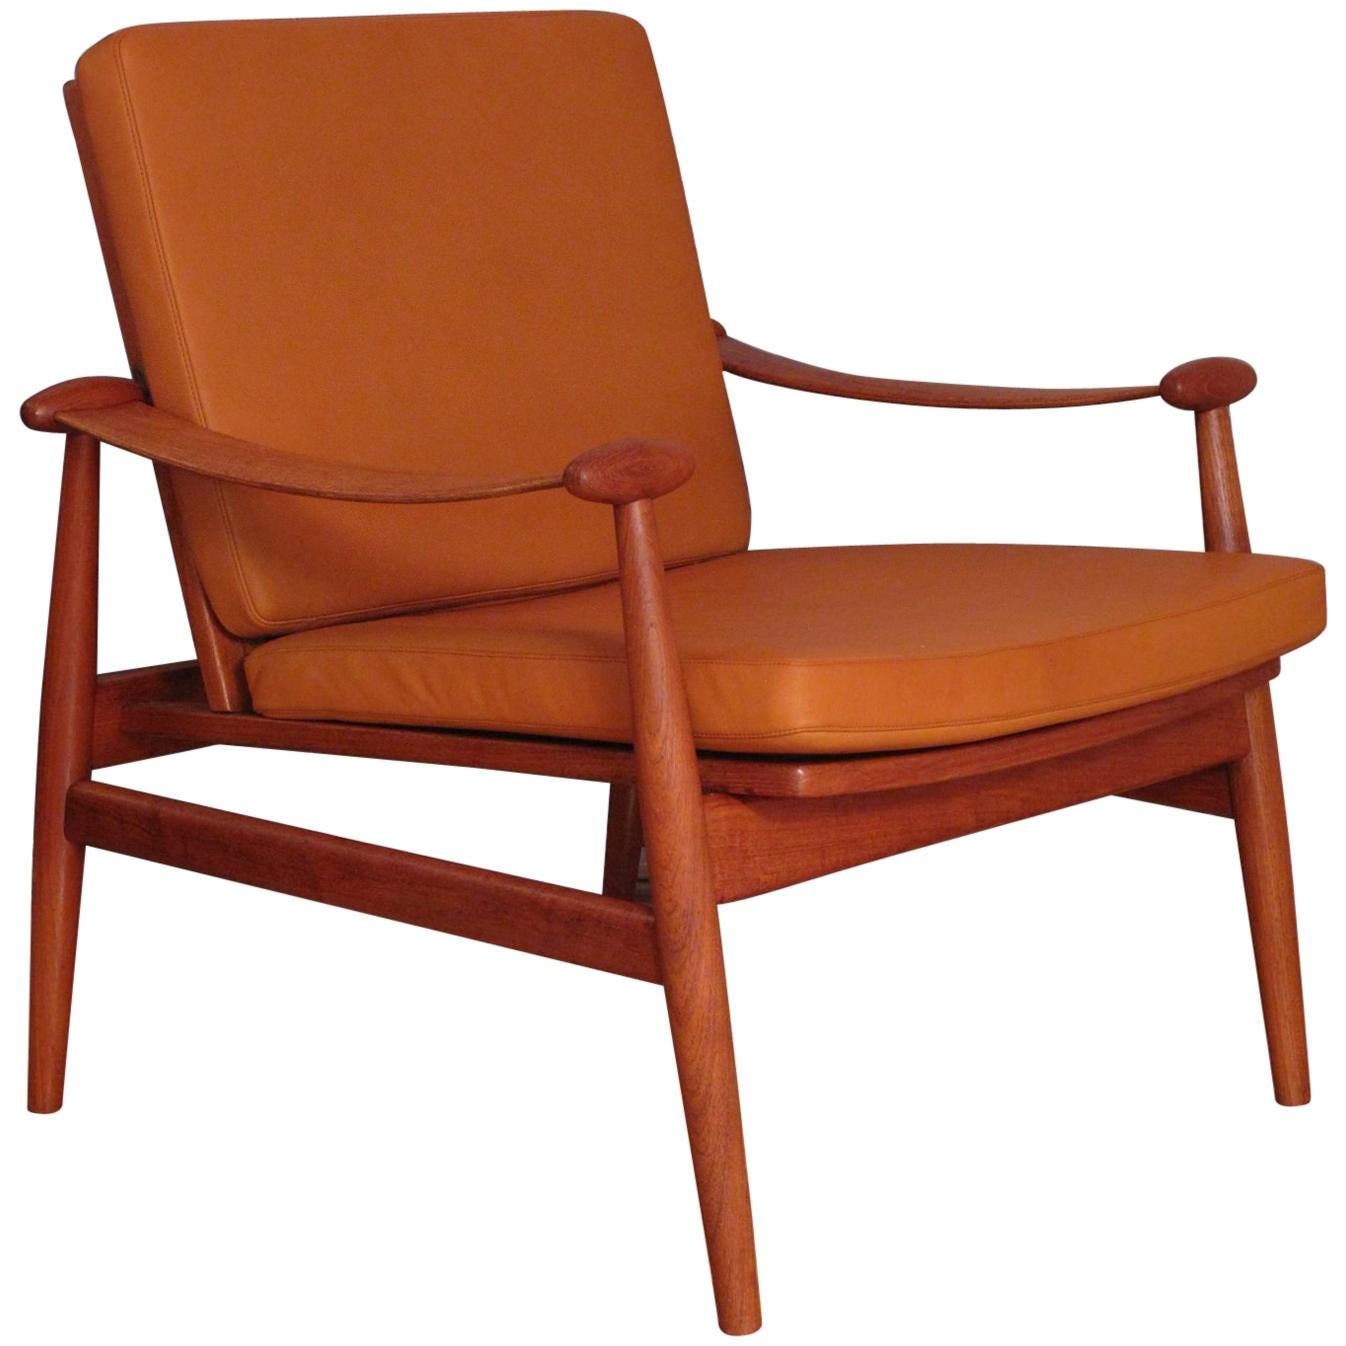 Finn Juhl Model 133 'Spadestolen' Teak and Leather Lounge Chair